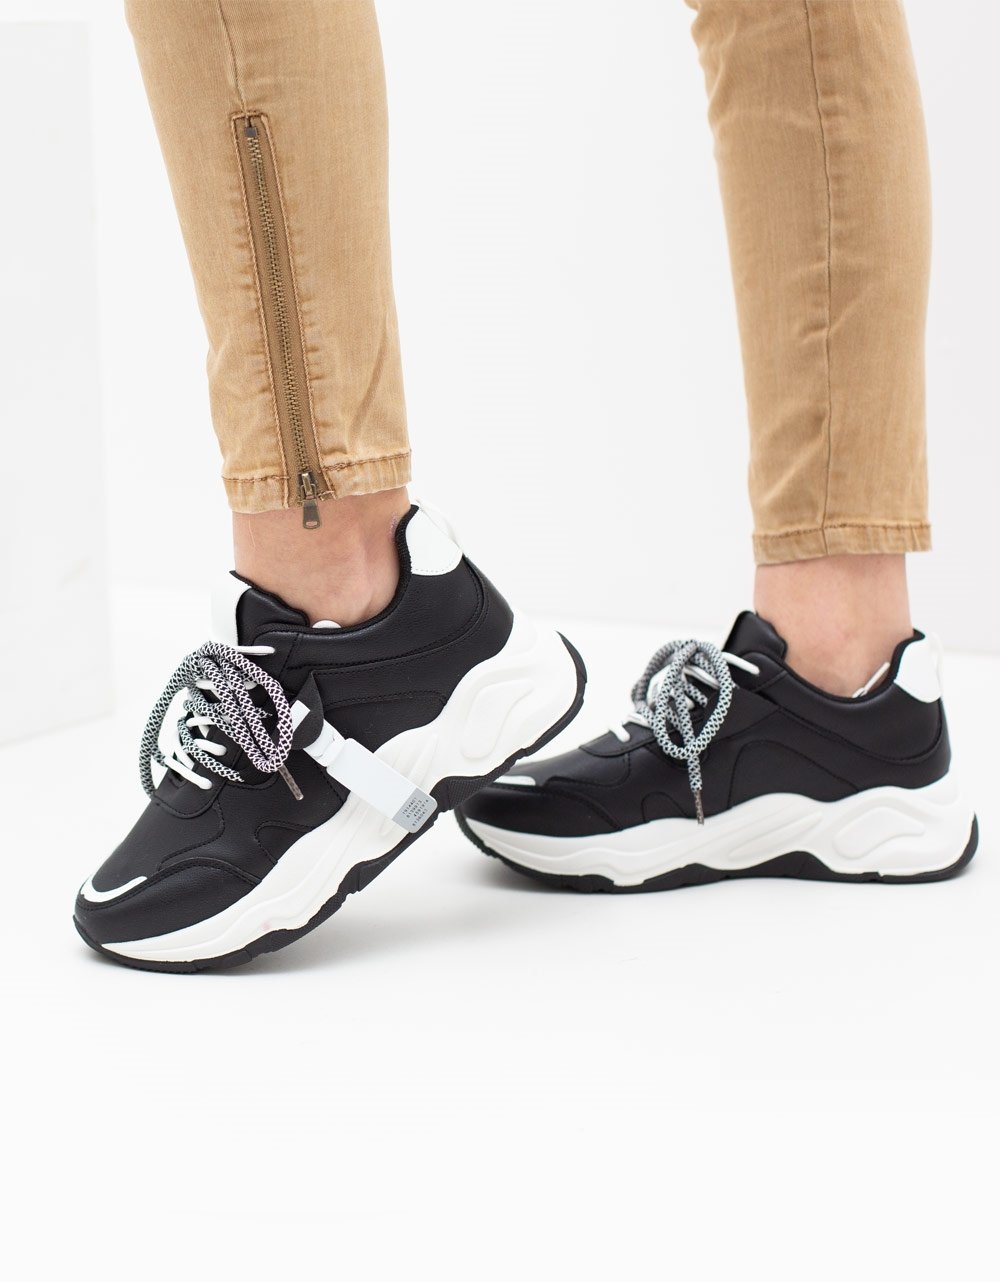 Εικόνα από Γυναικεία sneakers με ανάγλυφες λεπτομέρειες Μαύρο/Λευκό